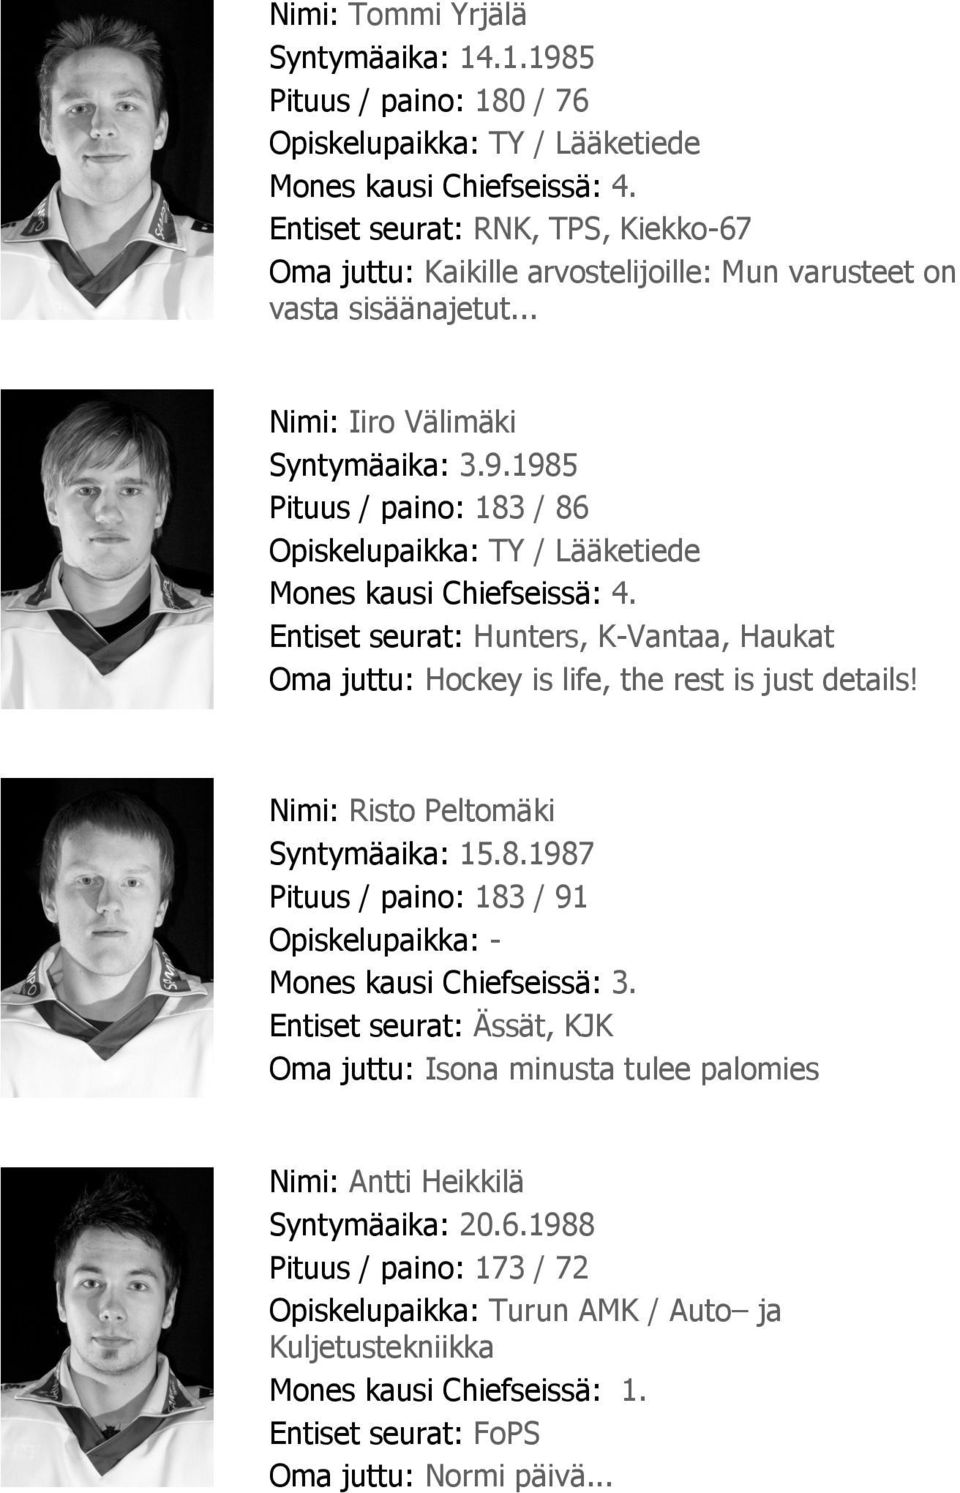 1985 Pituus / paino: 183 / 86 Opiskelupaikka: TY / Lääketiede Mones kausi Chiefseissä: 4. Entiset seurat: Hunters, K-Vantaa, Haukat Oma juttu: Hockey is life, the rest is just details!